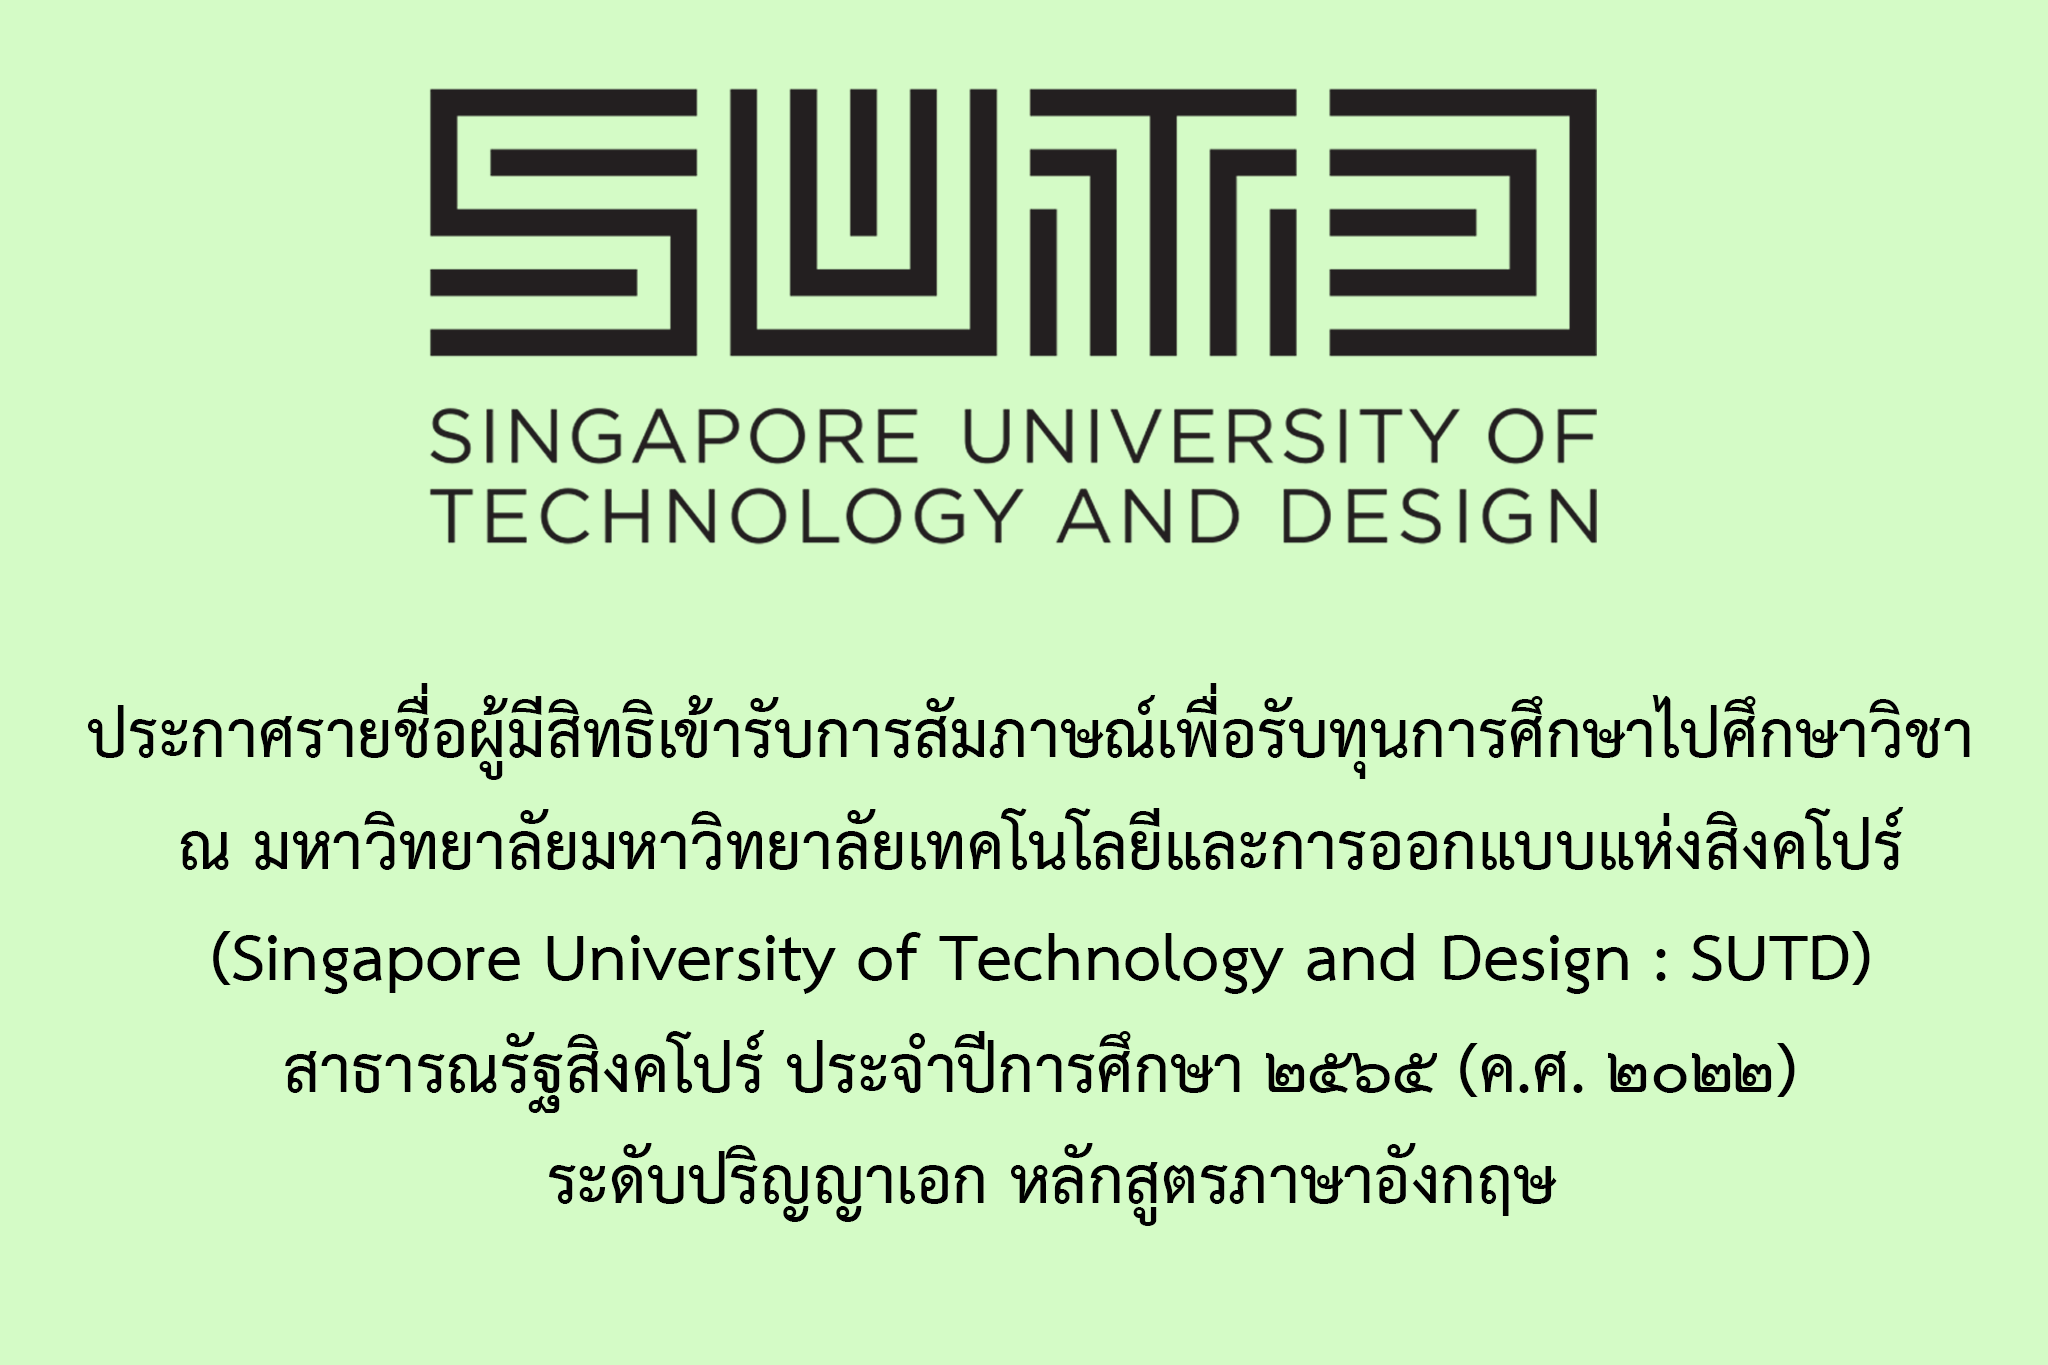 ประกาศการเข้ารับการสัมภาษณ์เพื่อรับทุนการศึกษาไปศึกษาวิชา ณ มหาวิทยาลัยเทคโนโลยีและการออกแบบแห่งสิงคโปร์ (Singapore University of Technology and Design : SUTD) สาธารณรัฐสิงคโปร์ ประจำปีการศึกษา ๒๕๖๕ (ค.ศ. ๒๐๒๒) ระดับปริญญาเอก หลักสูตรภาษาอังกฤษ